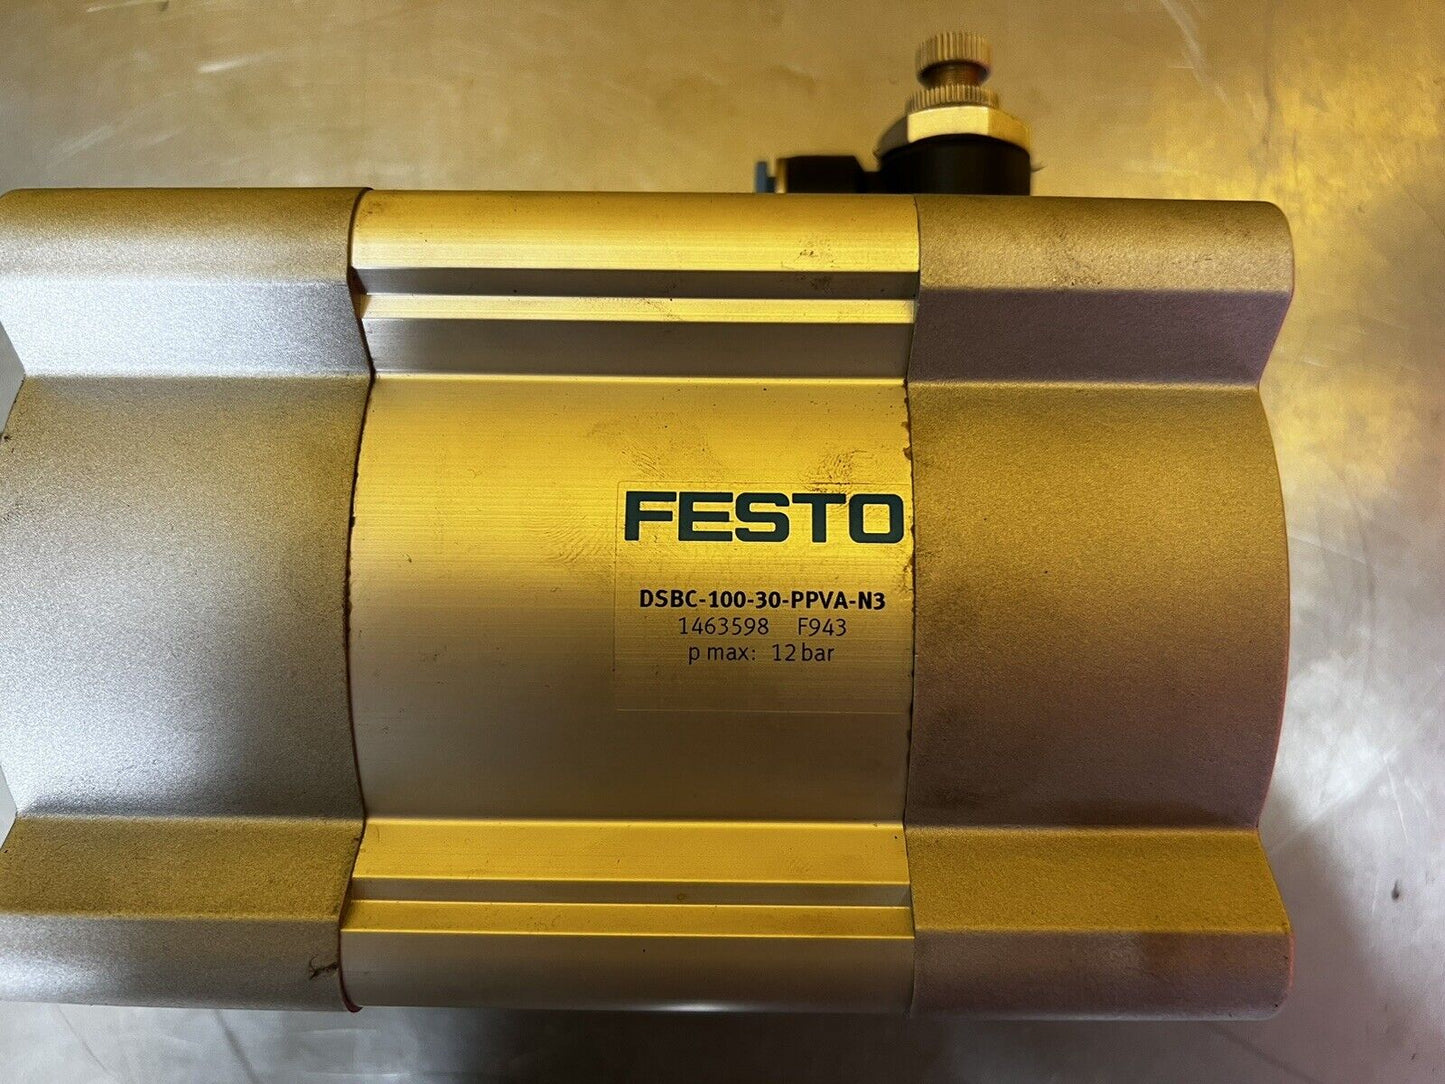 Festo DSBC-100-30-PPVA-N3